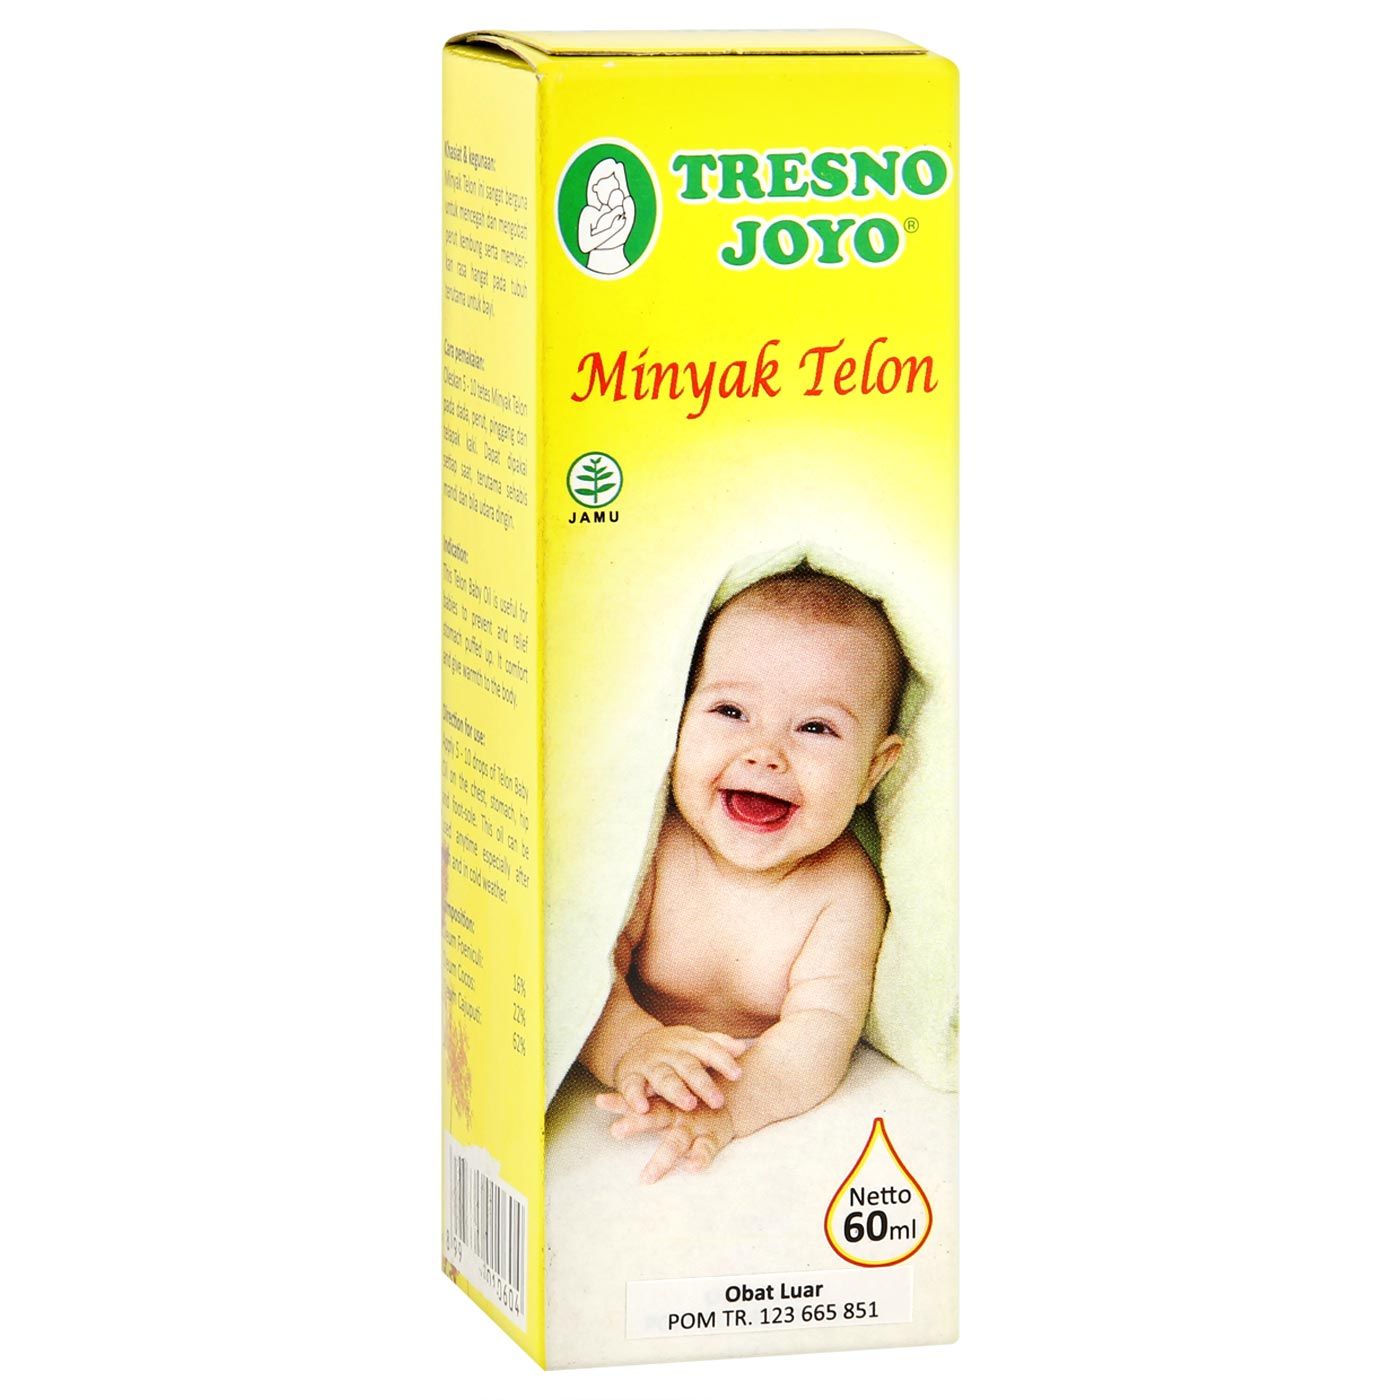 Tresno Joyo Minyak Telon 60ml - 4